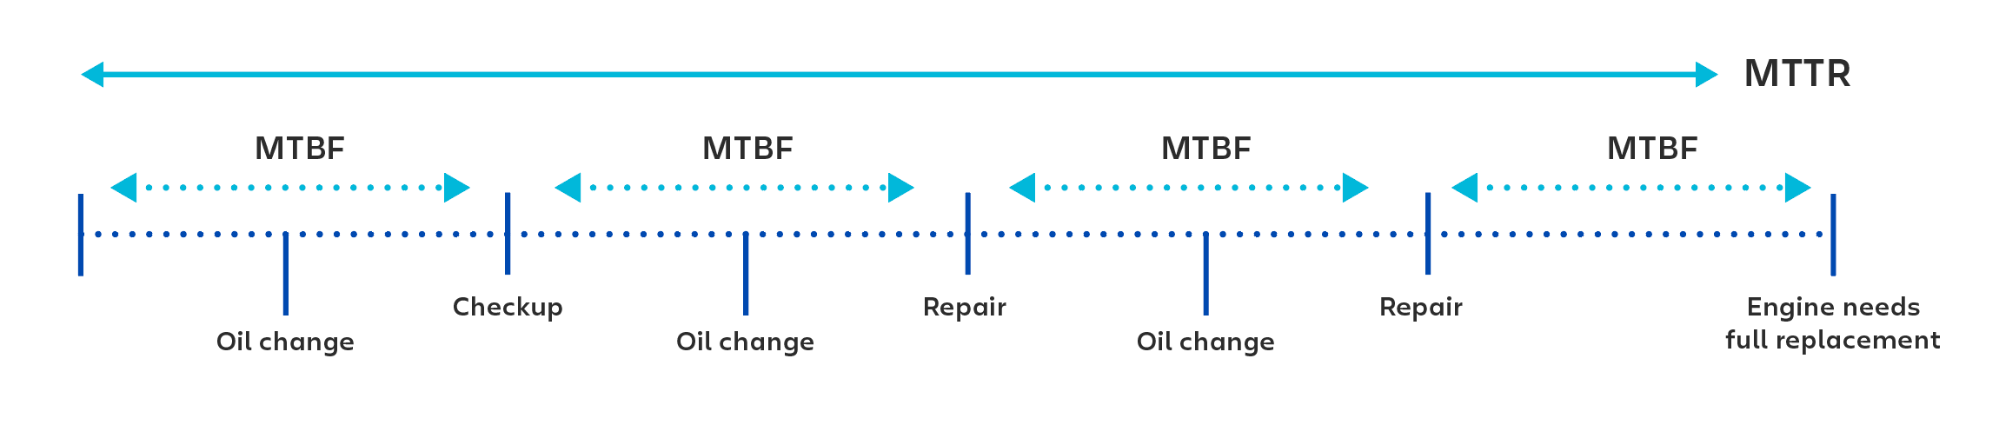 在计算每次检查或修复之间的时间时使用 MTBF（平均故障间隔时间）的可视示例。